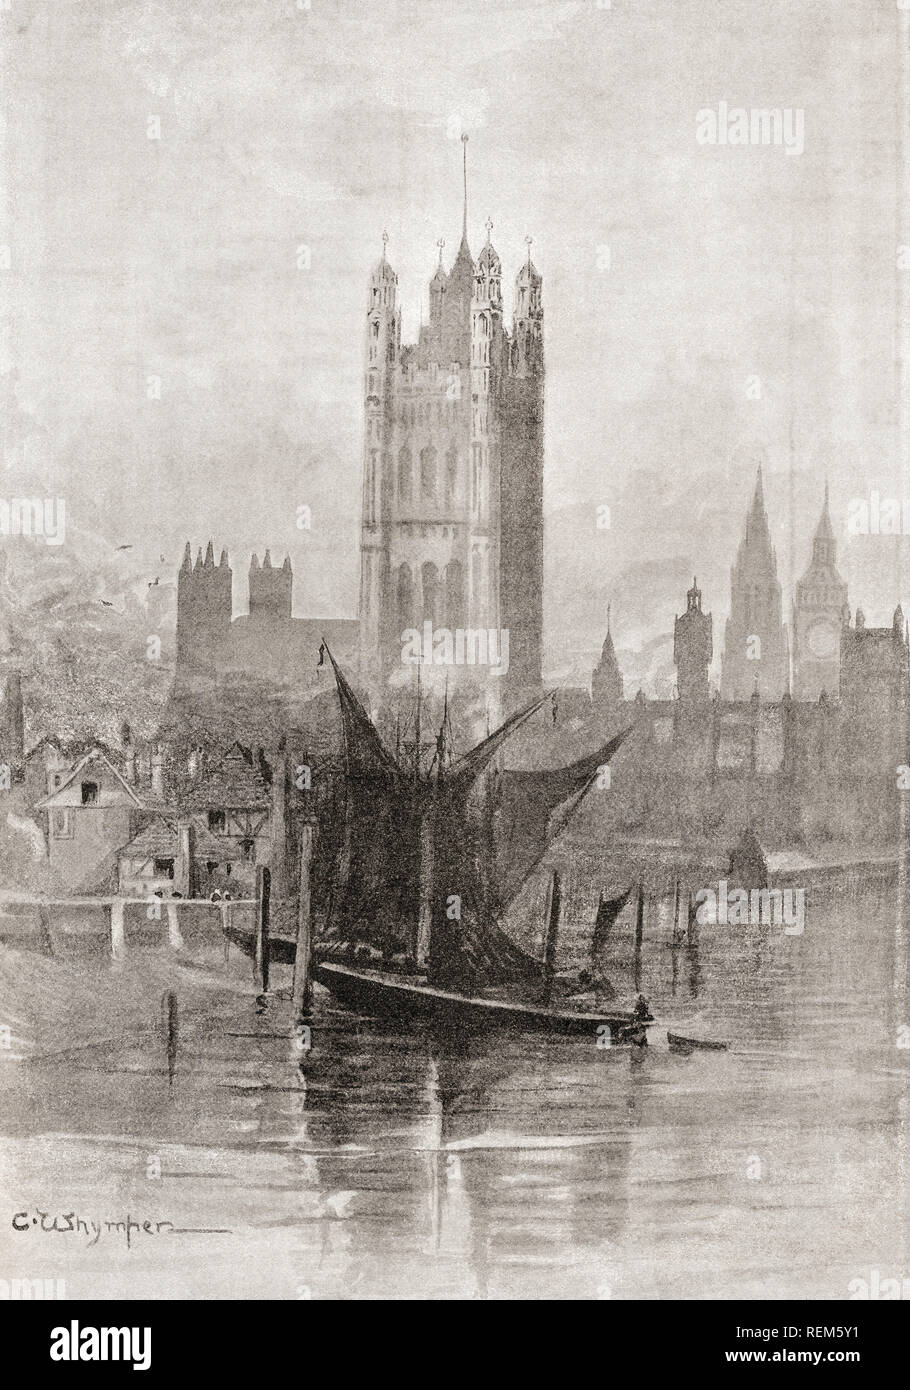 Der neue Palast von Westminster, Westminster, London, England, hier Nach seinem Wiederaufbau nach dem Brand von 1834, der praktisch das Alte Schloss zerstört. Von London Bilder, veröffentlicht 1890 Stockfoto